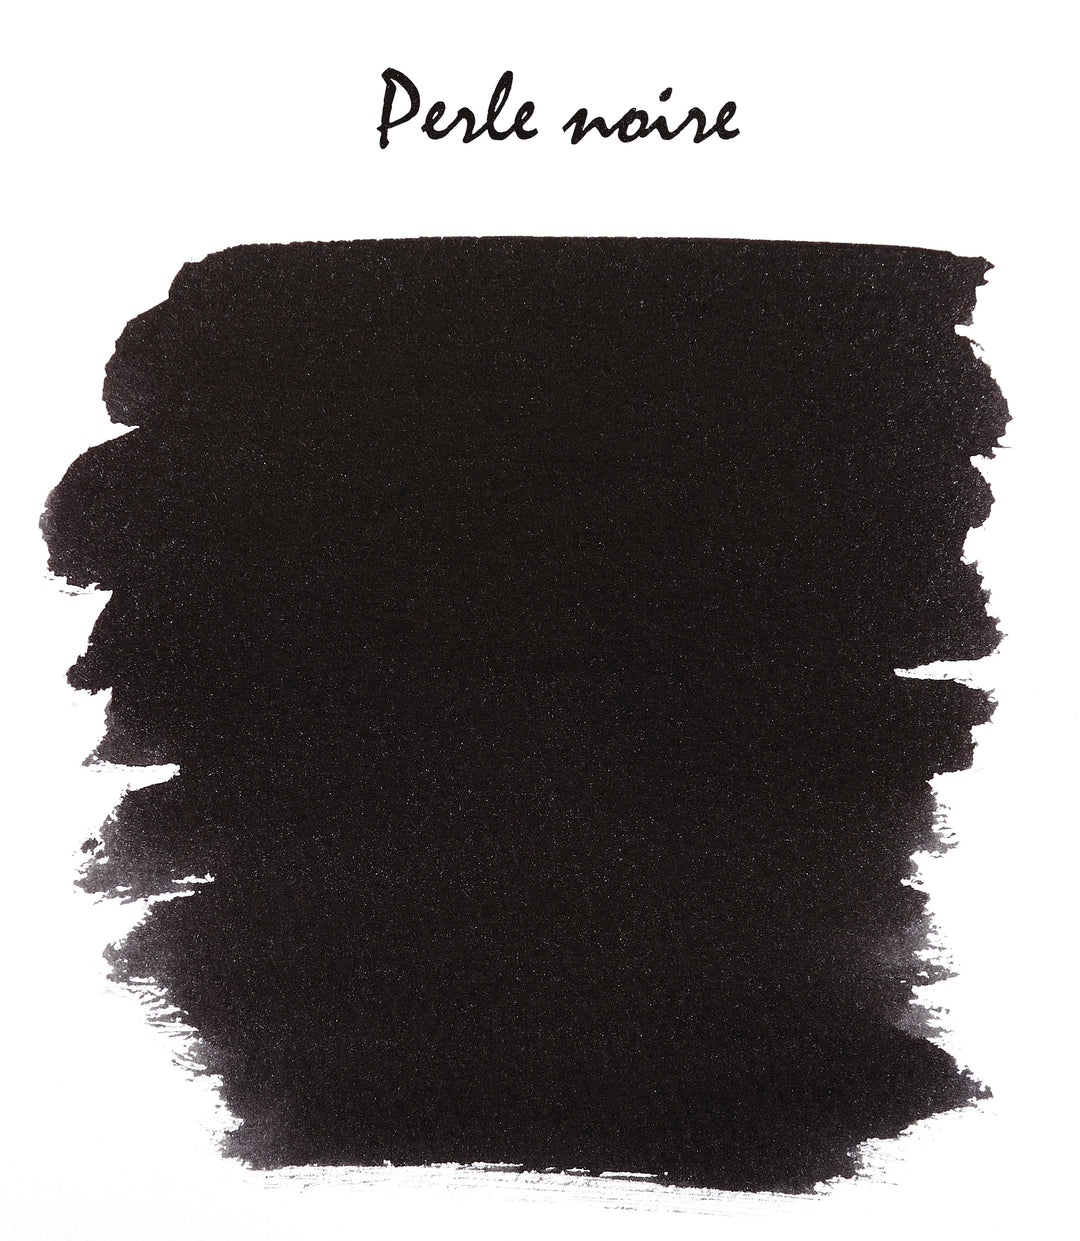 Herbin Standard Ink # 09 - Perle Noire